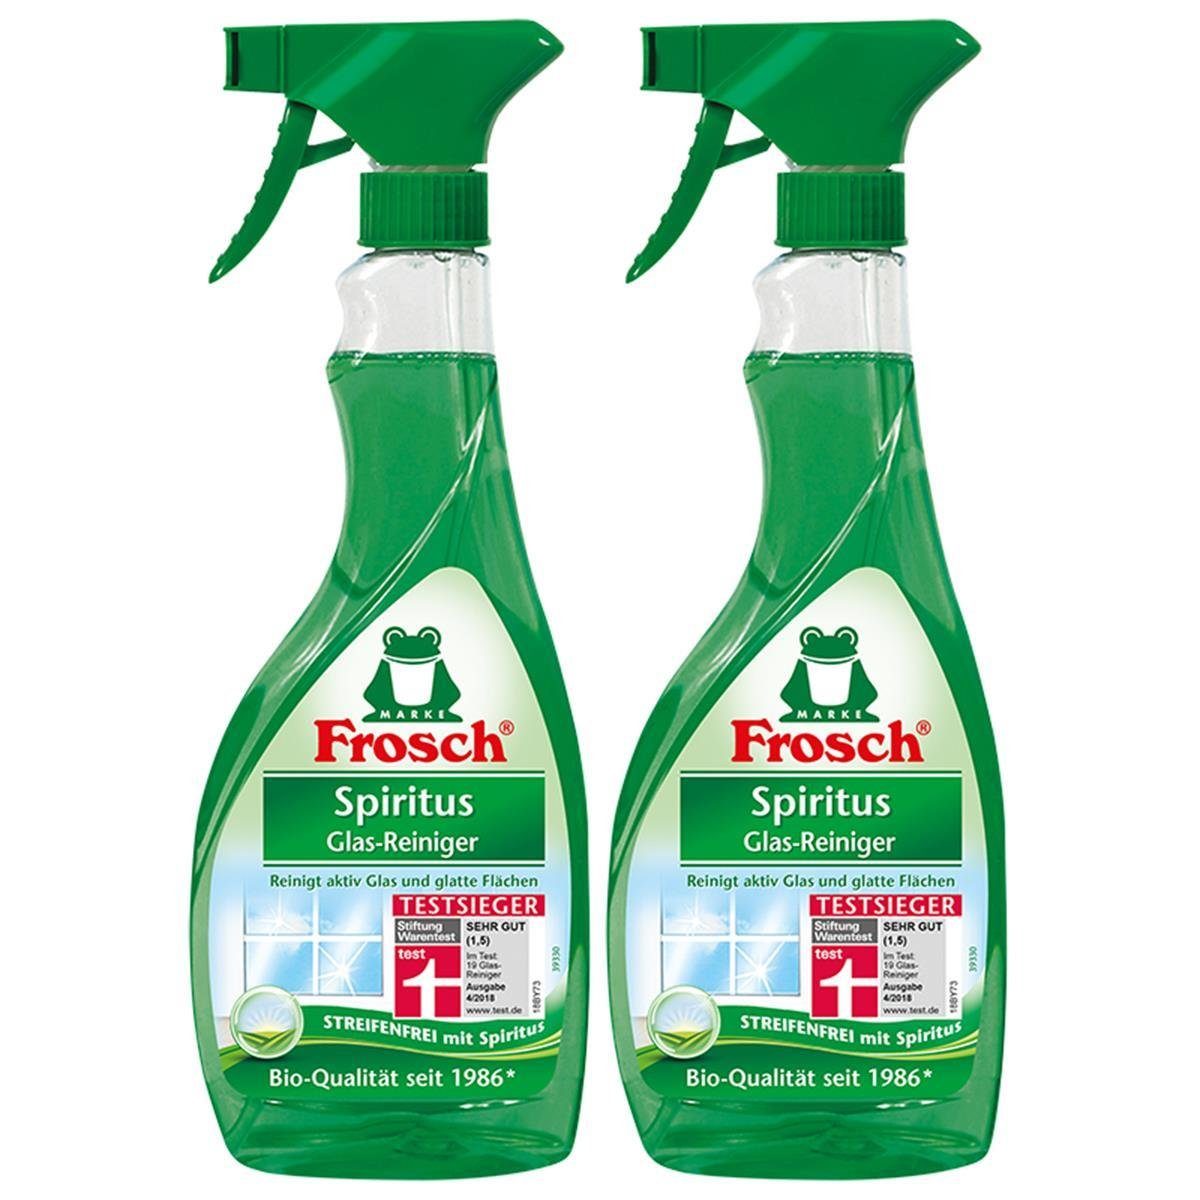 FROSCH 2x Frosch Spiritus Glas-Reiniger Sprühflasche Glasreiniger 500 ml